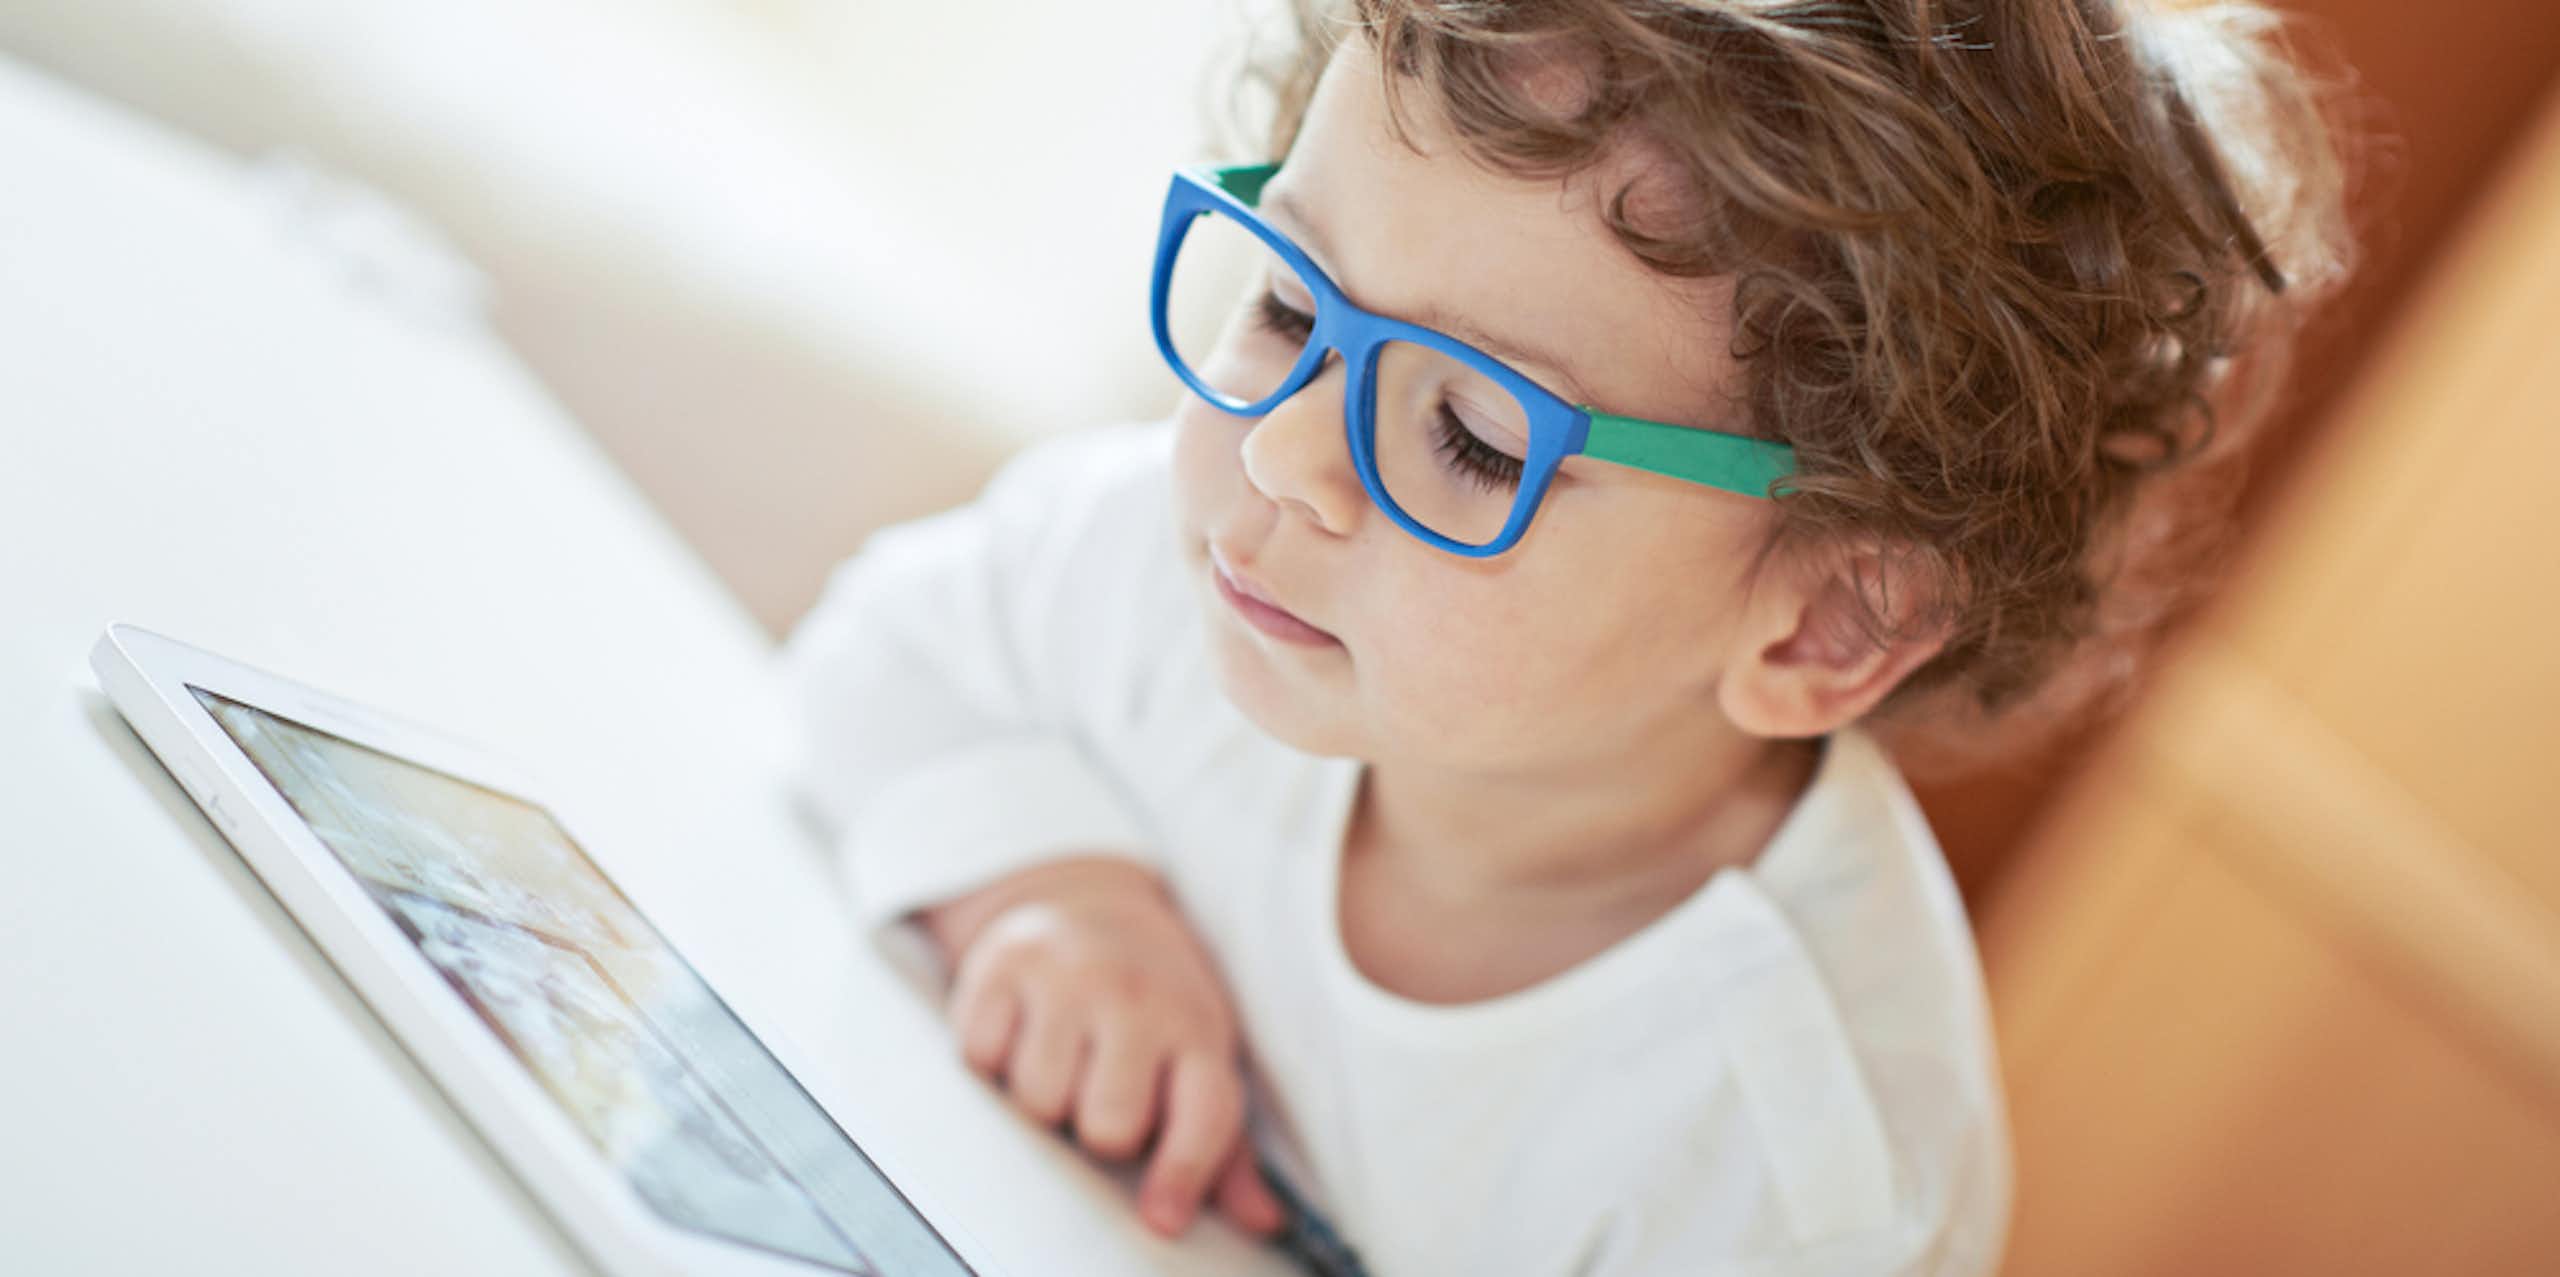 jeune garçon avec des lunettes regarde une tablette électronique